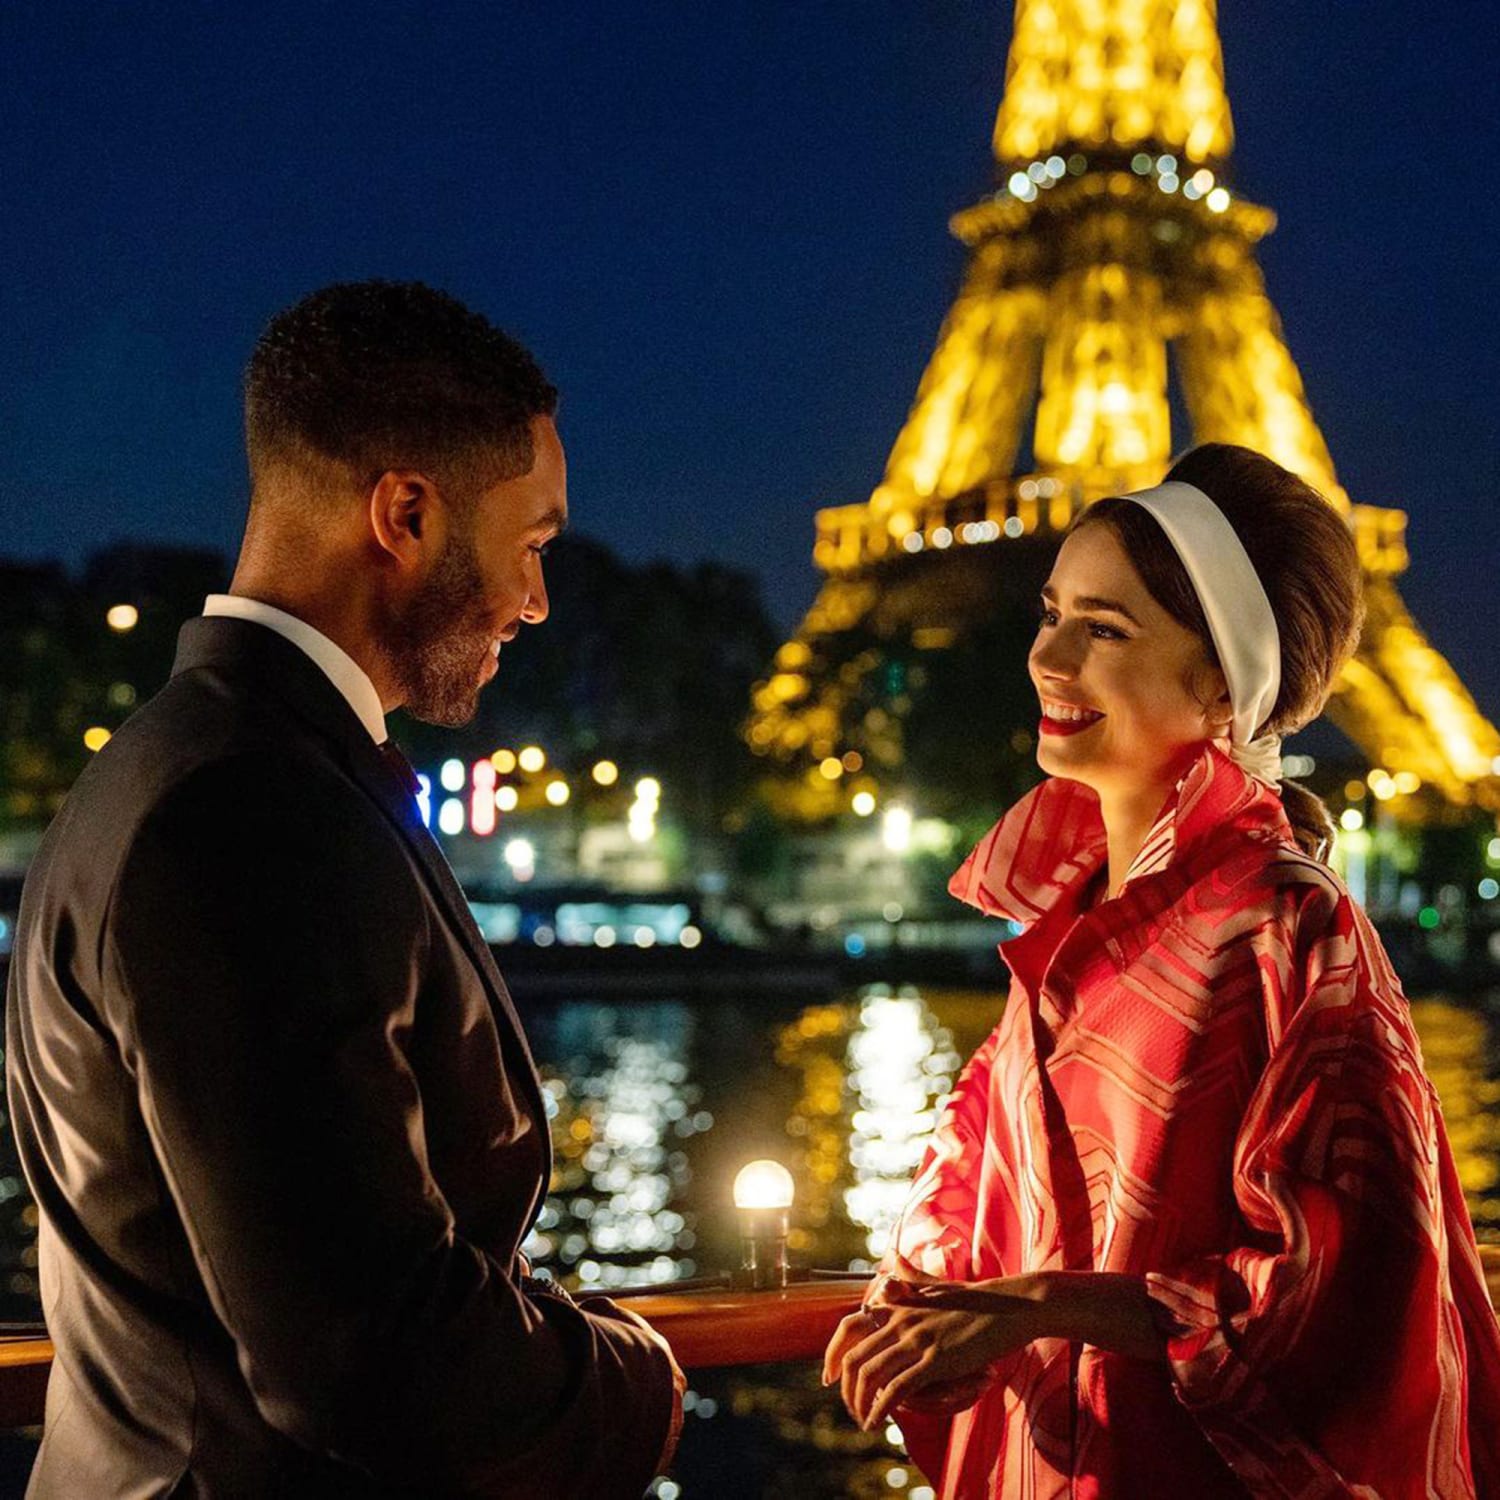 12 'Emily in Paris' Bags We Love - Netflix Tudum